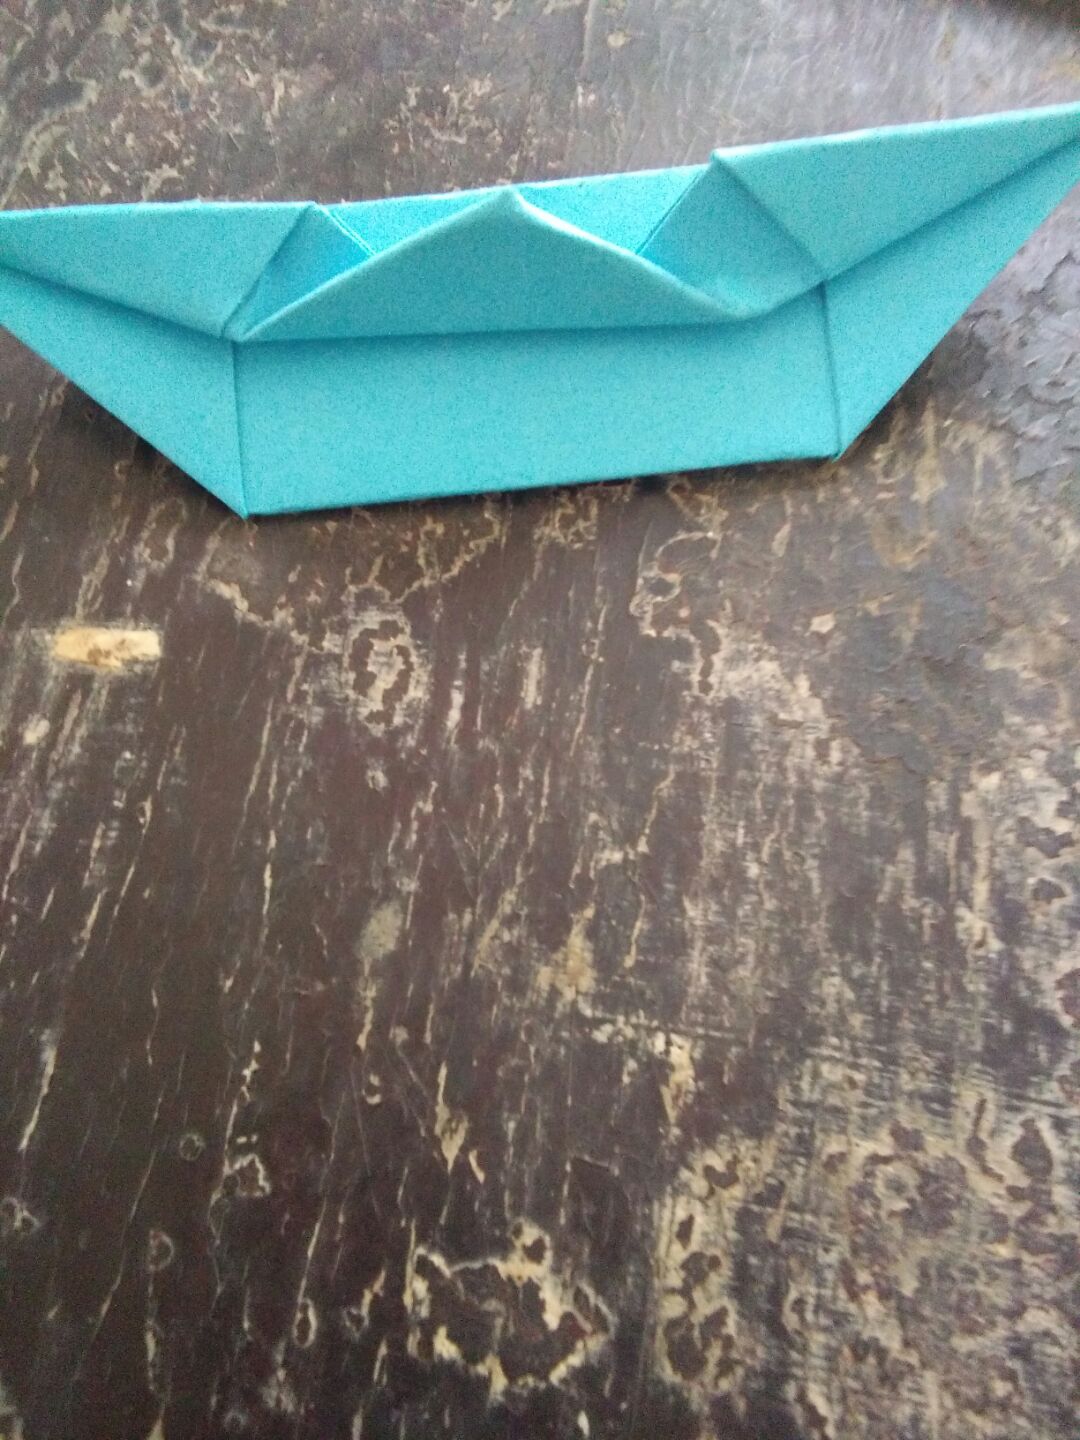 Barco-de-papel-paso-a-paso-Origami-Paper-Boat - Ludicobox